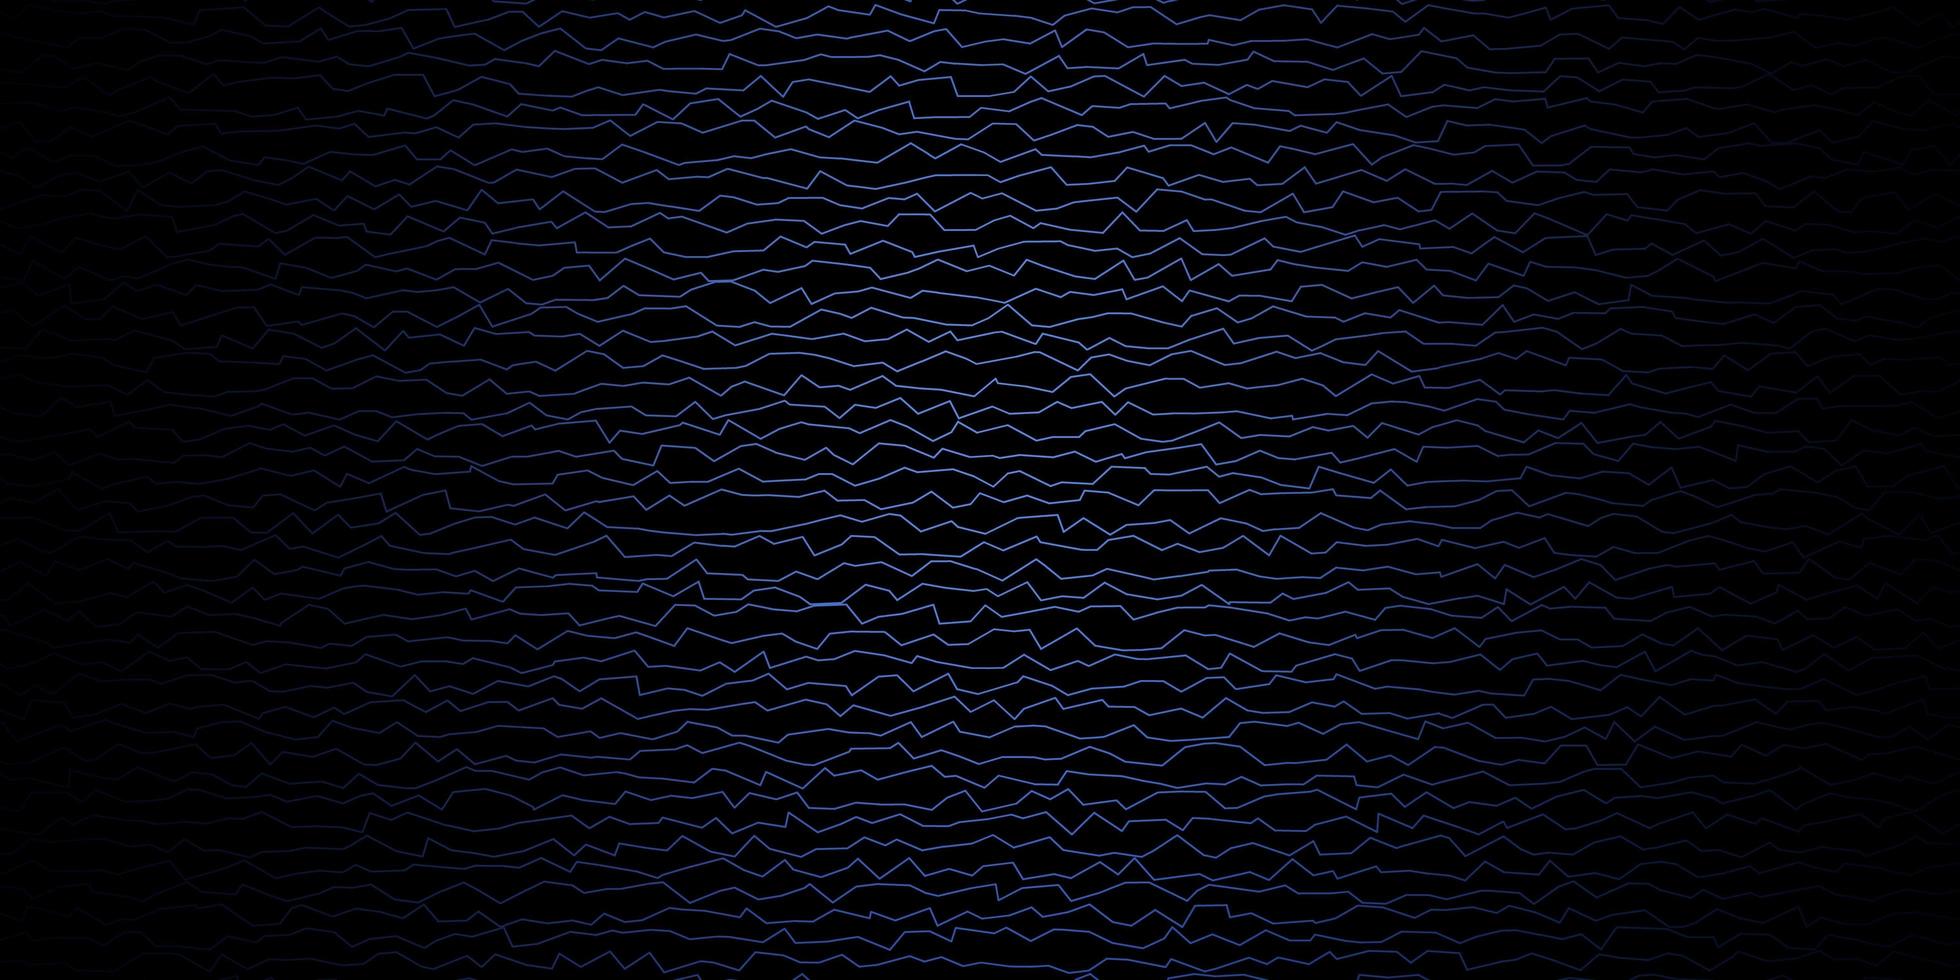 padrão de vetor azul escuro com linhas irônicas.